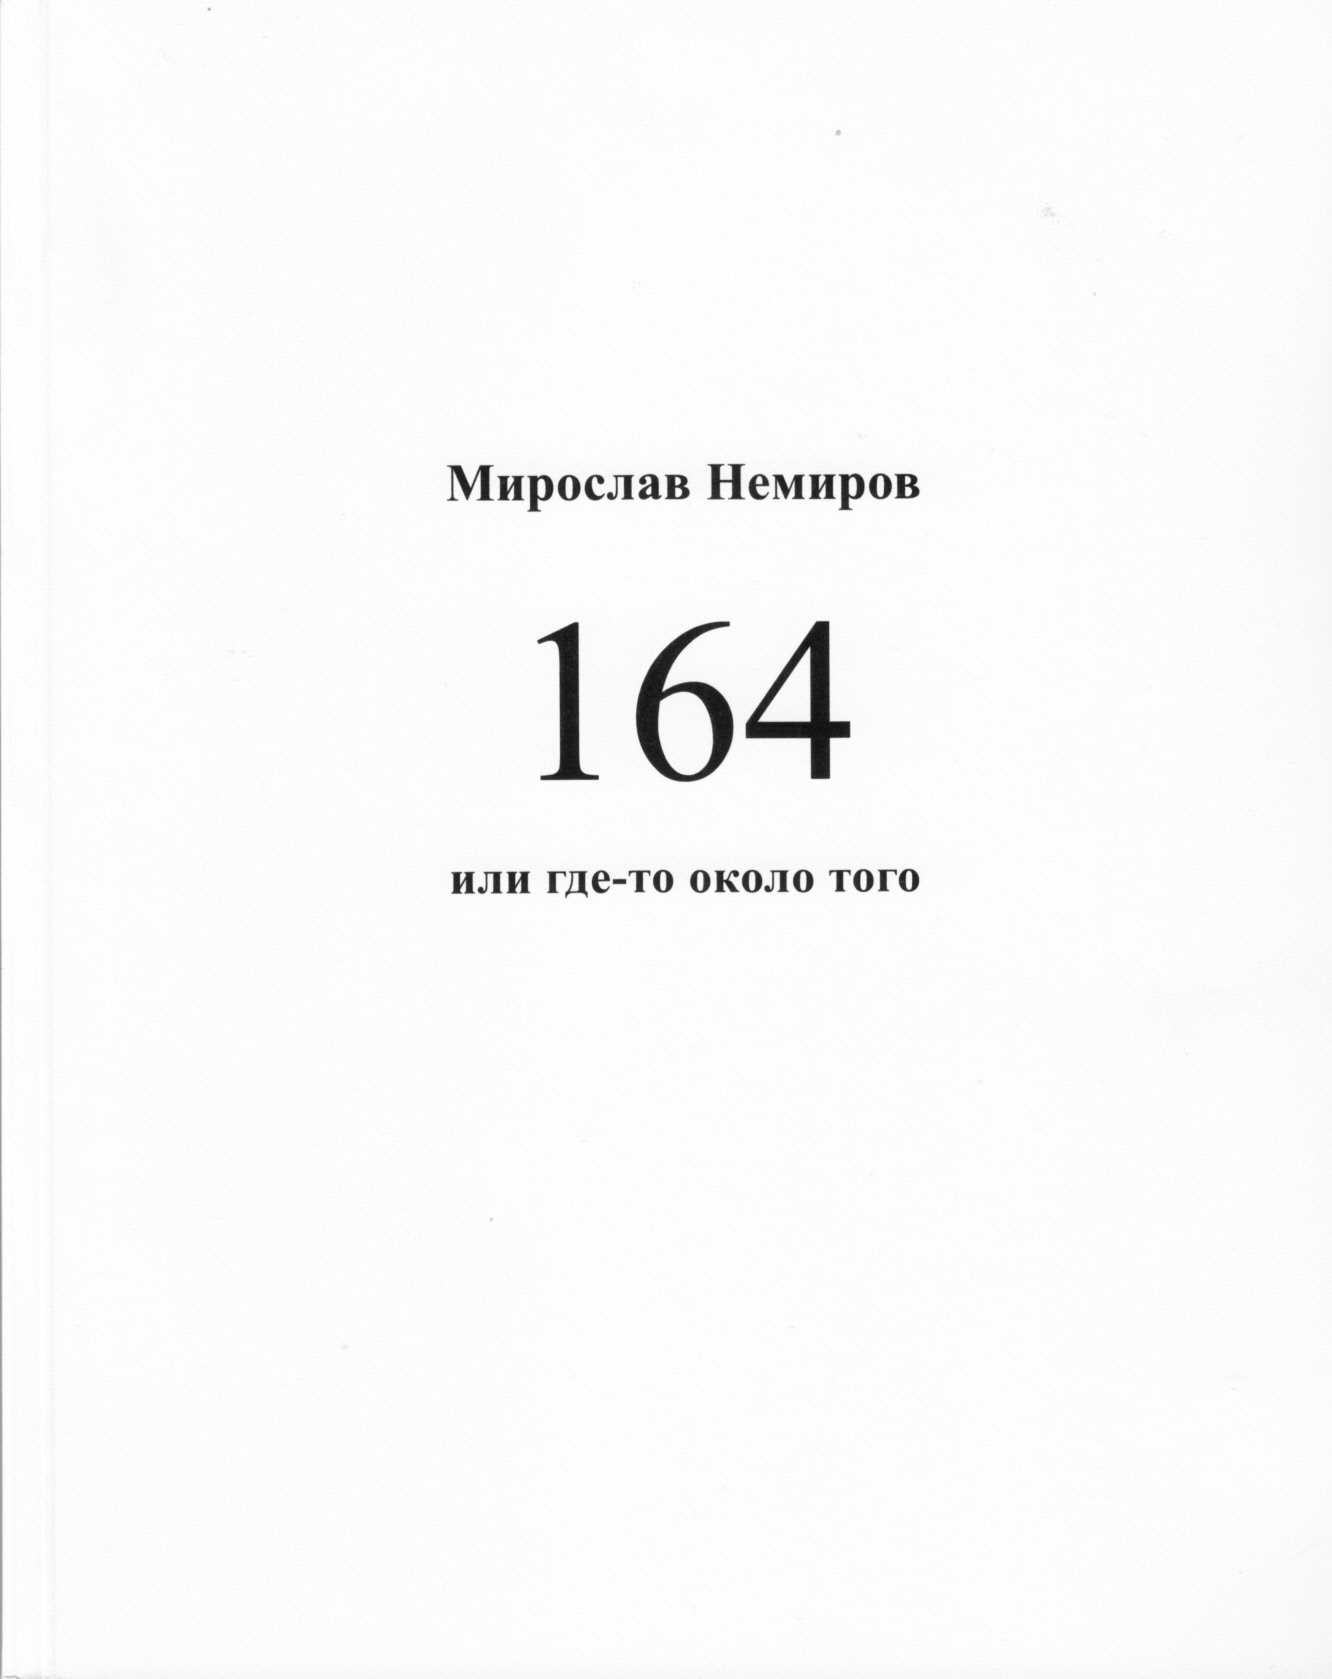 Немиров Мирослав - 164 или где-то около того скачать бесплатно